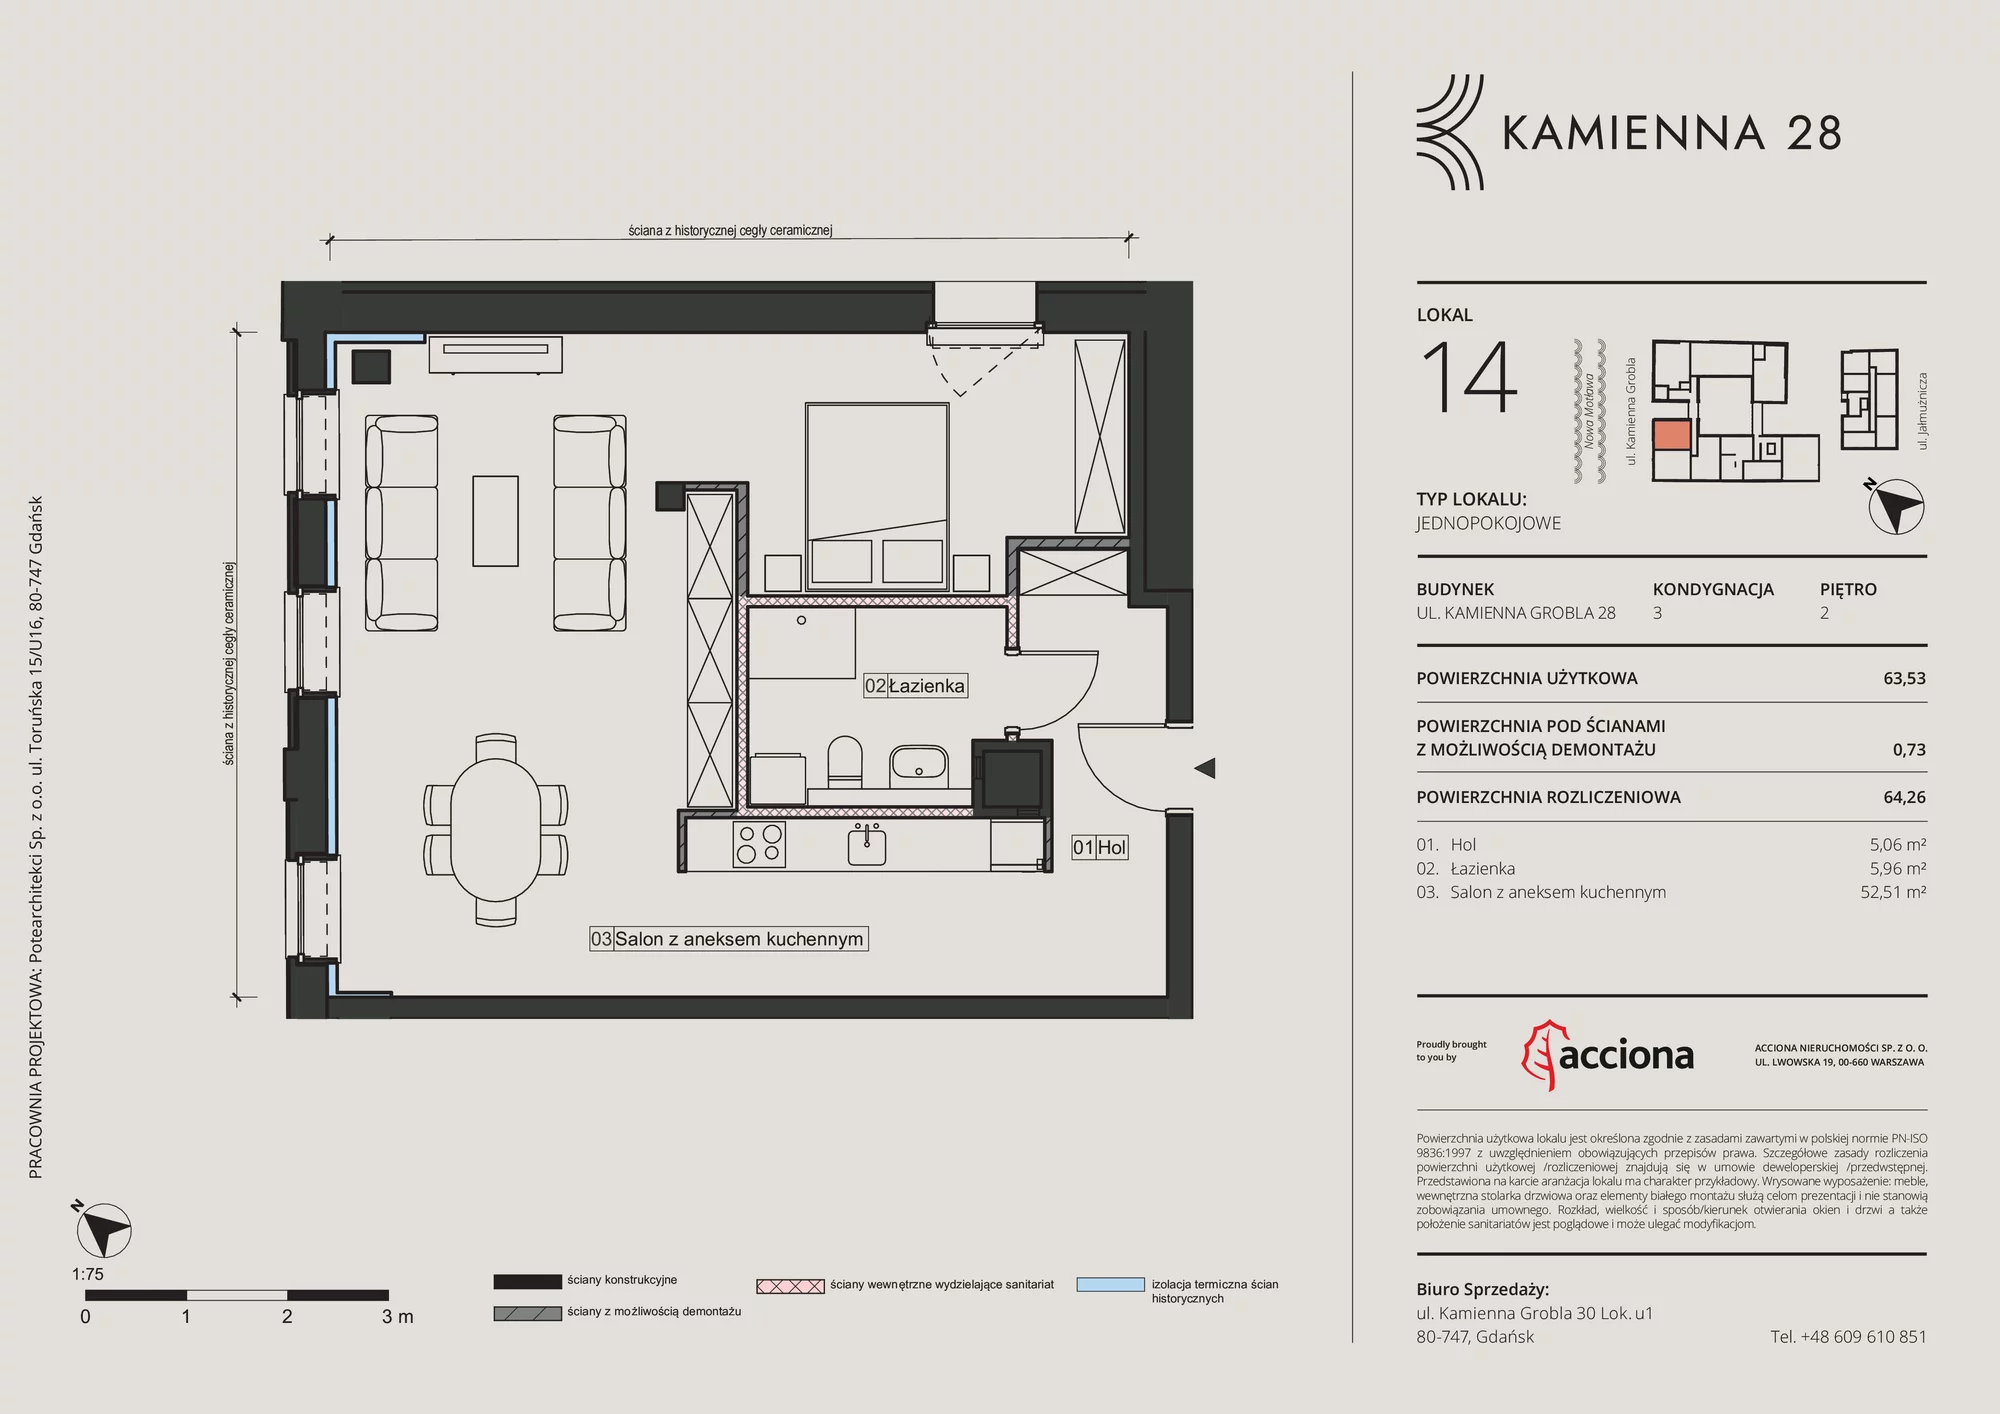 Apartament 64,26 m², piętro 2, oferta nr 28.14, Kamienna 28, Gdańsk, Śródmieście, Dolne Miasto, ul. Kamienna Grobla 28/29